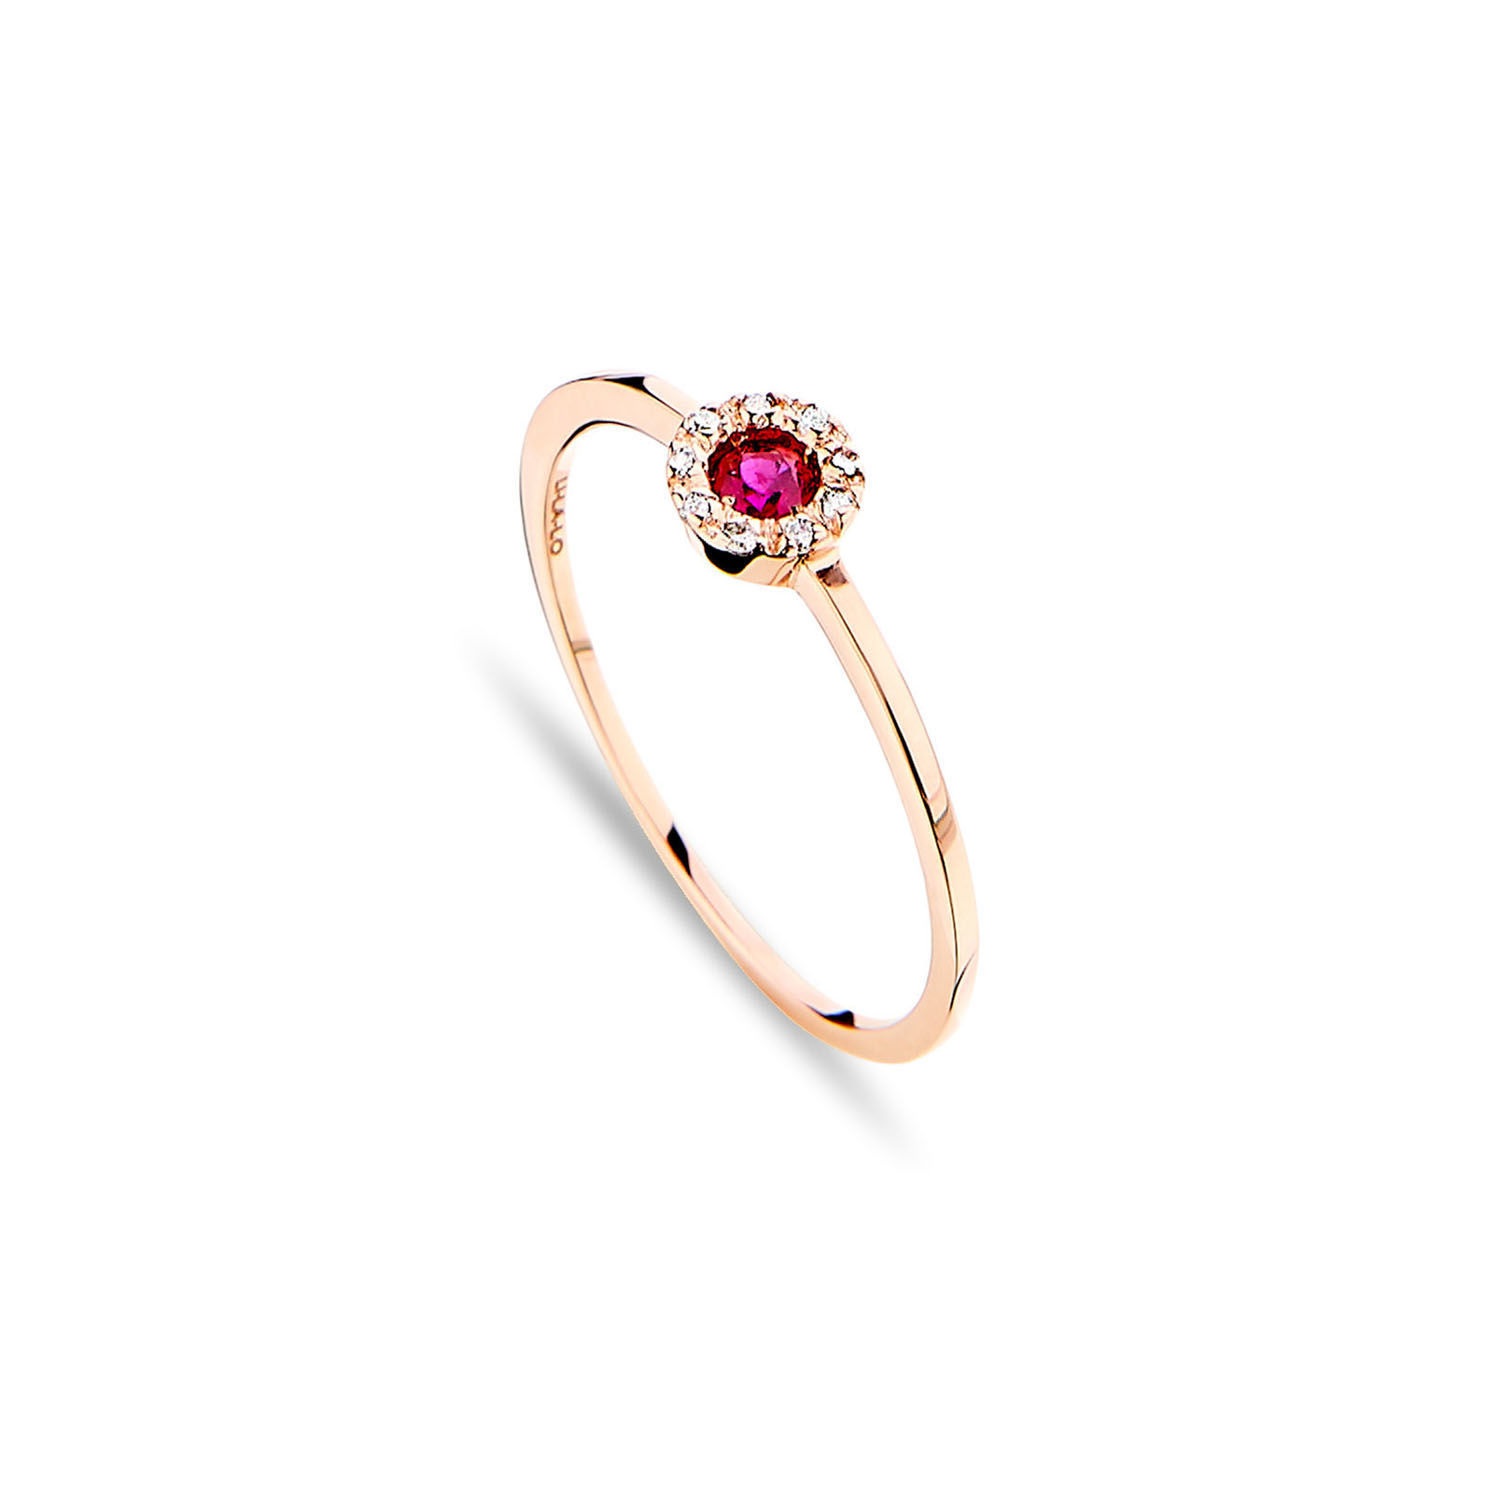 Δαχτυλίδι Gems από ροζ χρυσό 18K με ρουμπίνι και διαμάντια μπριγιάν